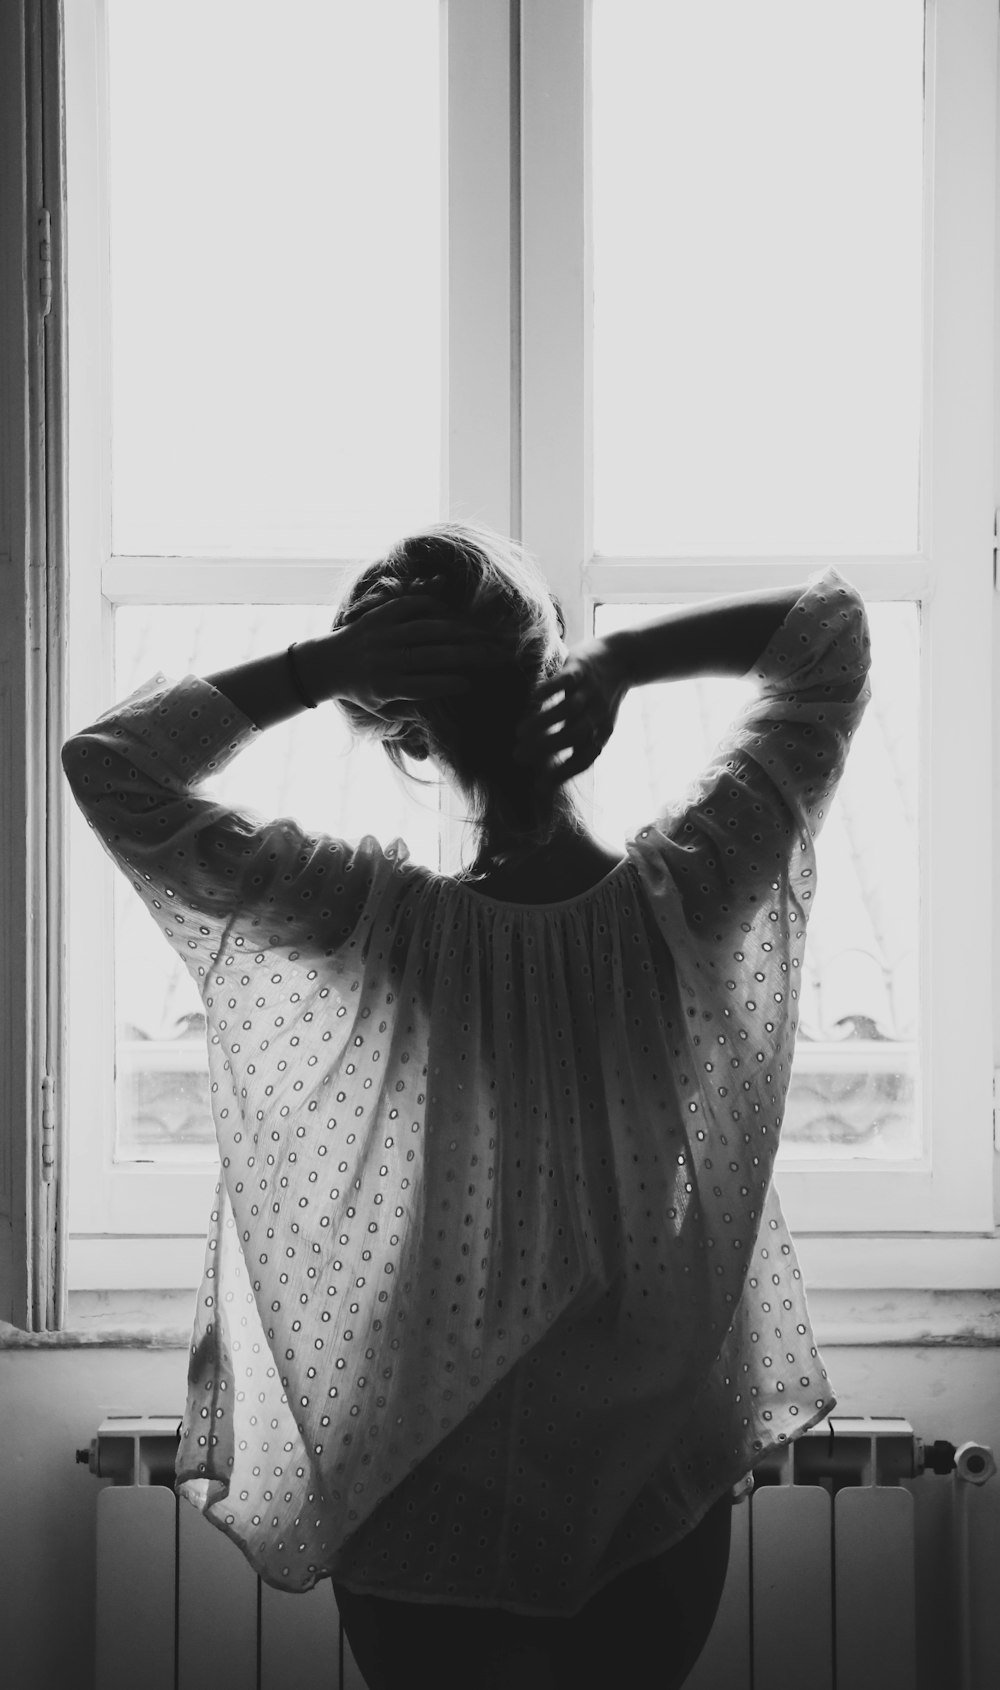 fotografia em tons de cinza da mulher em pé na frente da janela